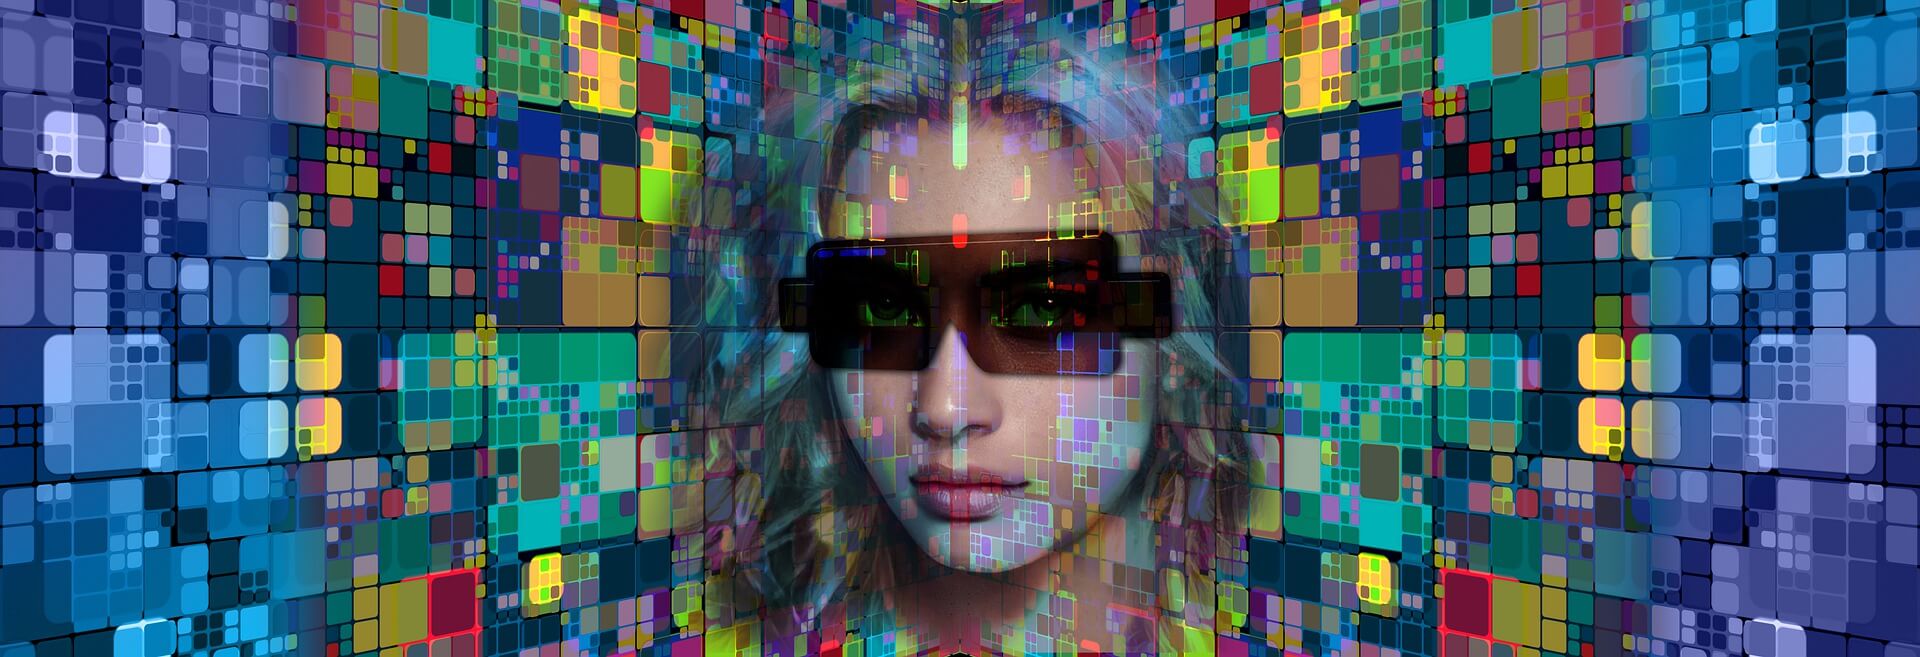 图片展示了一位戴着墨镜的女性面部，背景是由多彩的数字化像素块组成，给人一种未来科技感的视觉效果。